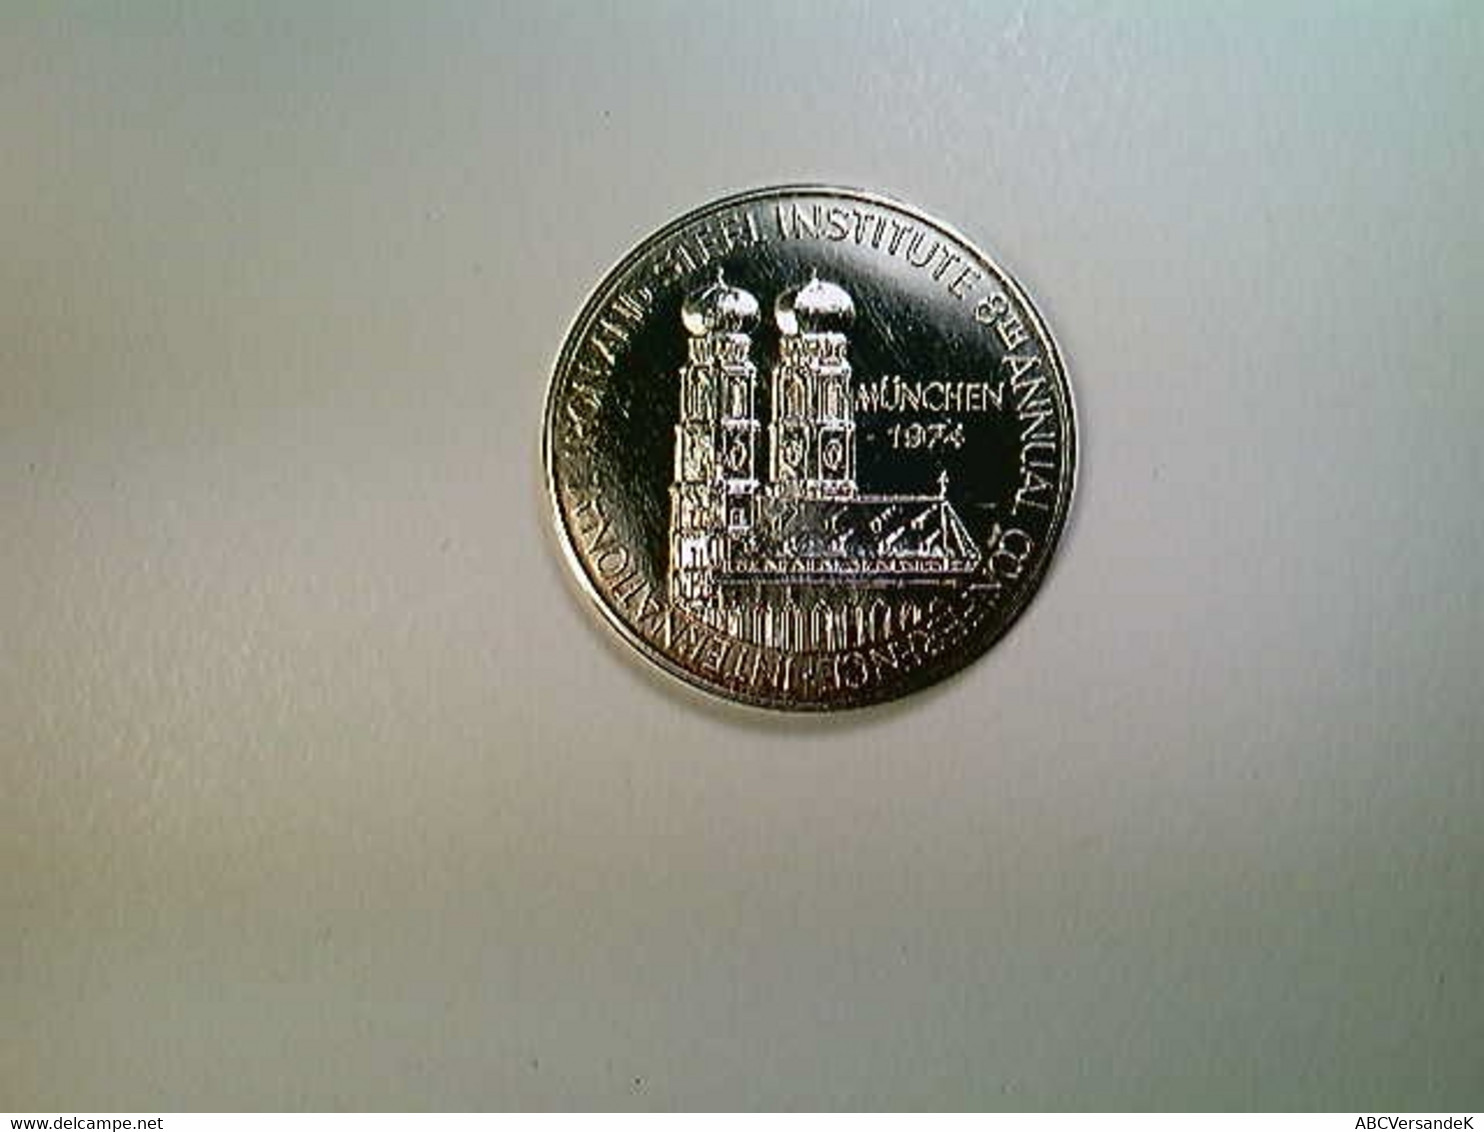 Medaille 100 Jahre Stahlwirtschaft 1874-1974, Düsseldorf/München, 1974, Silber 1000 - Numismatik